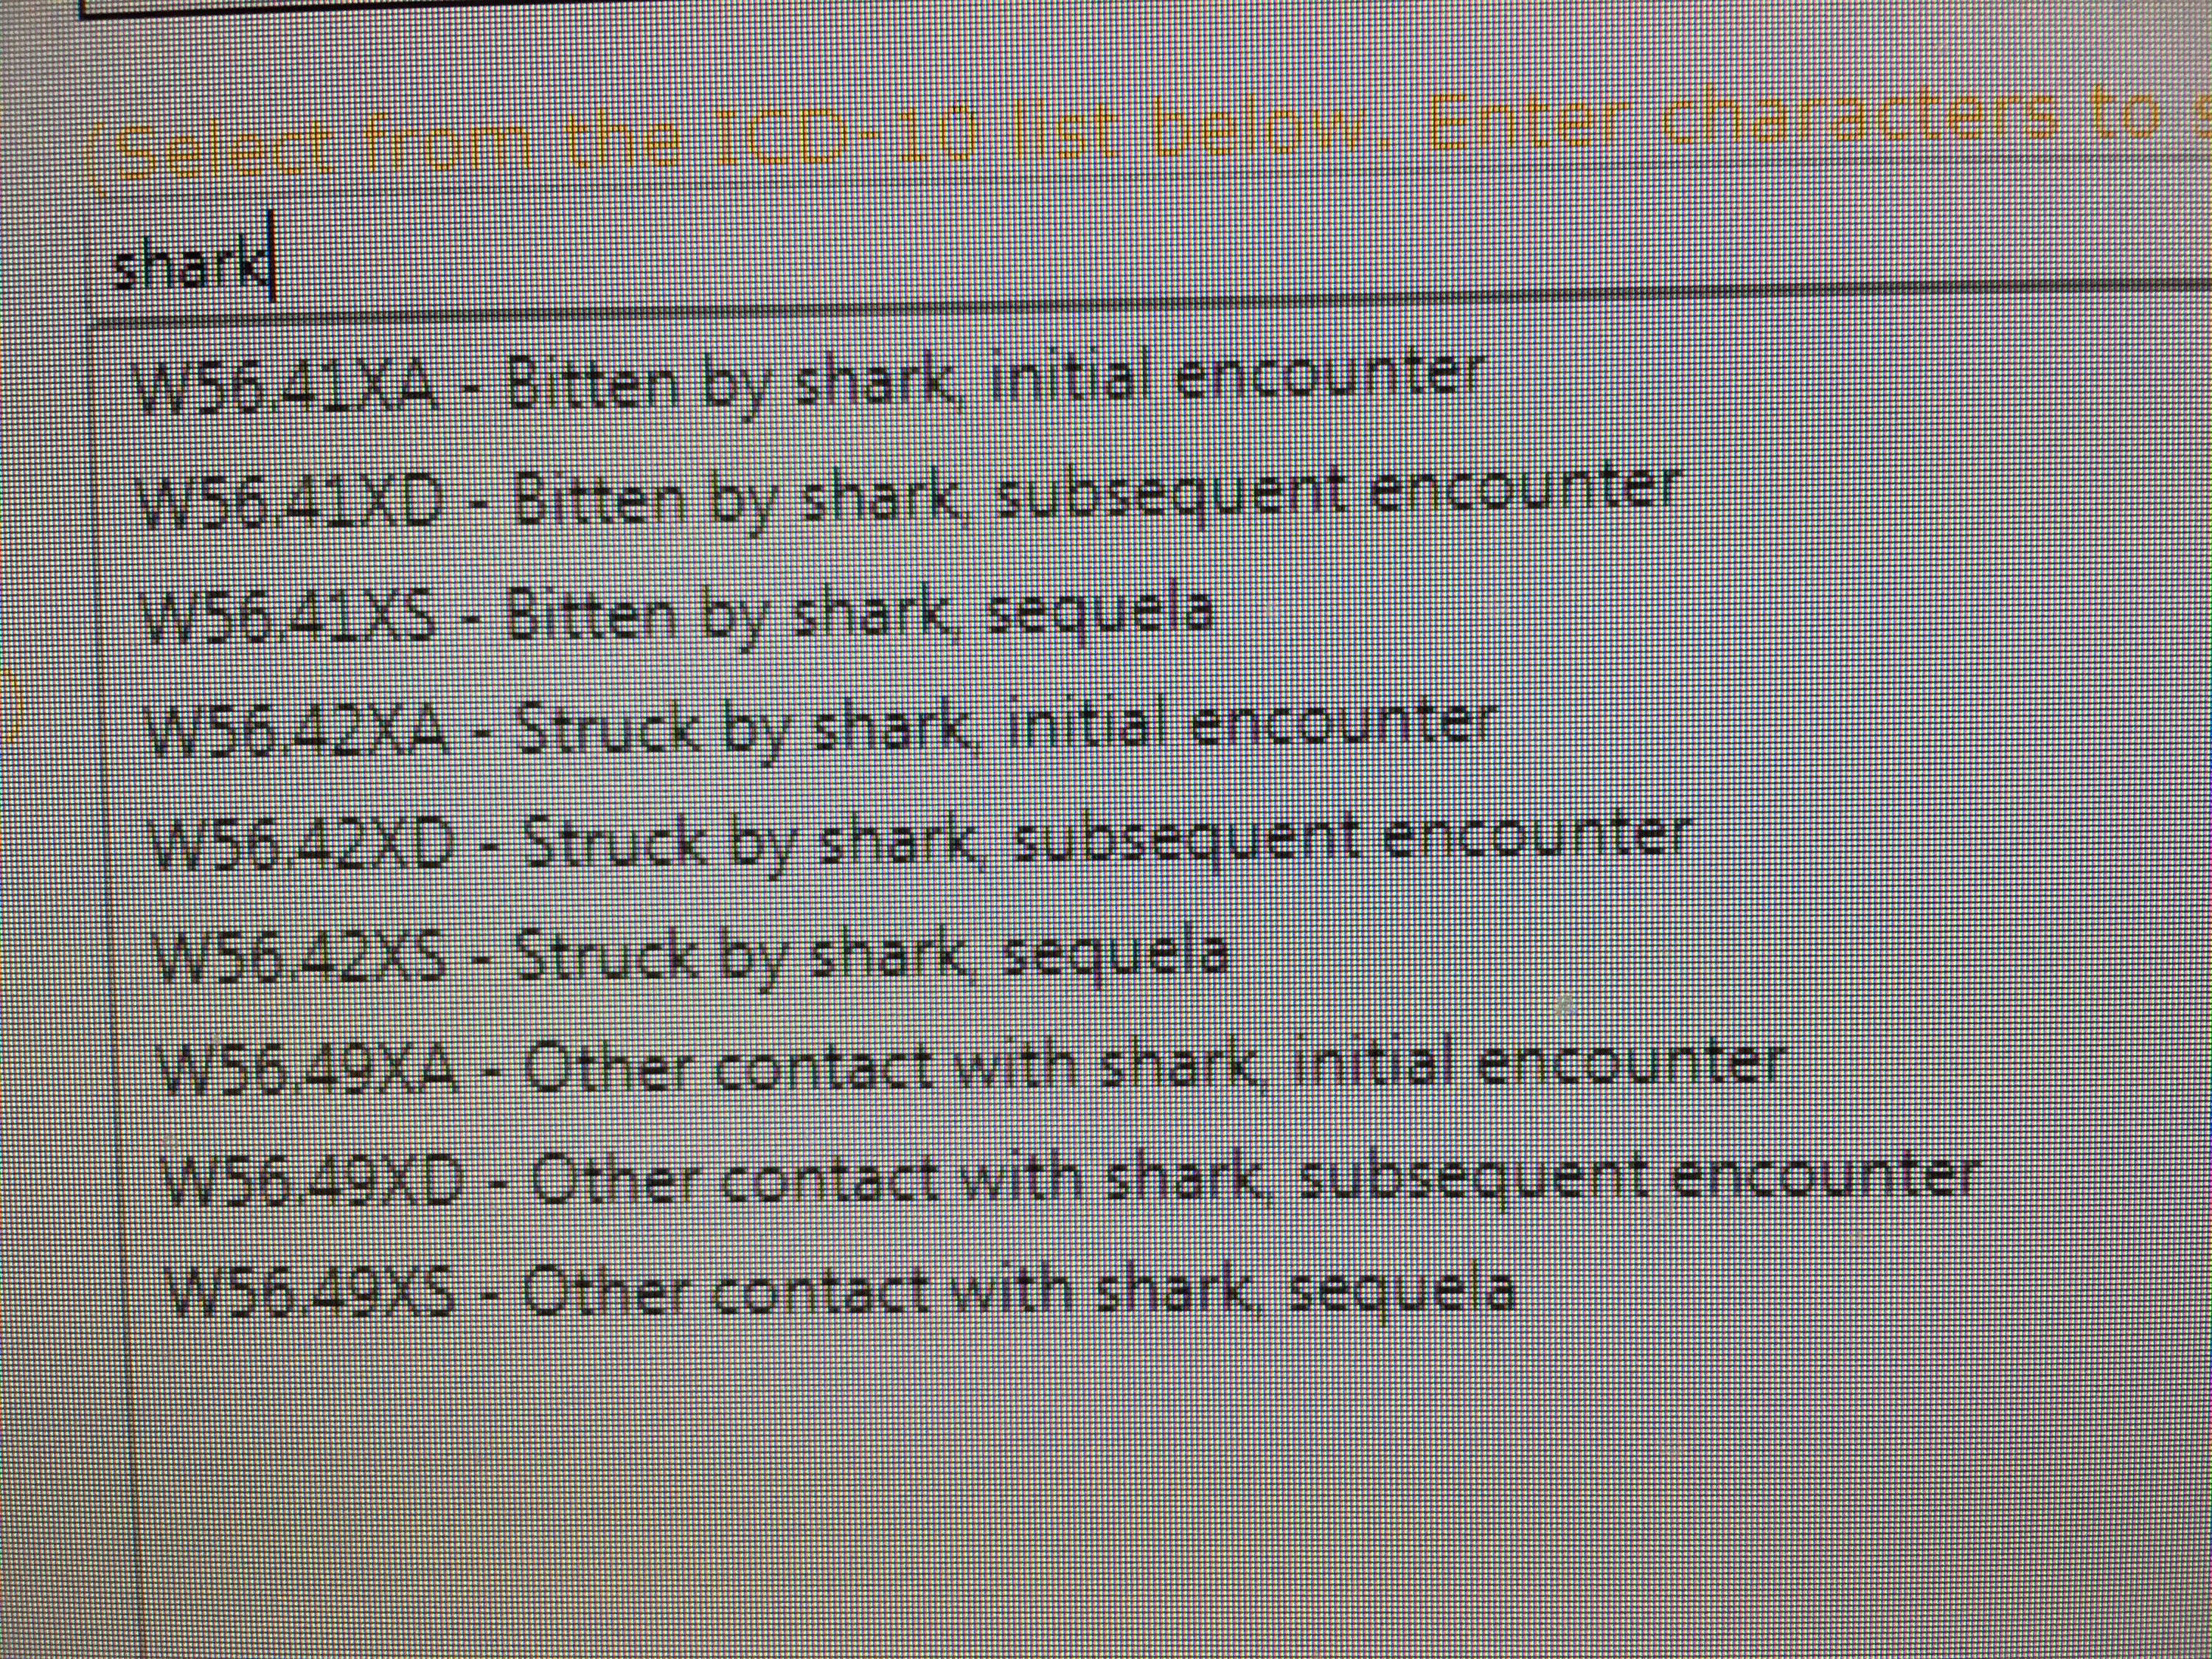 icd10 shark